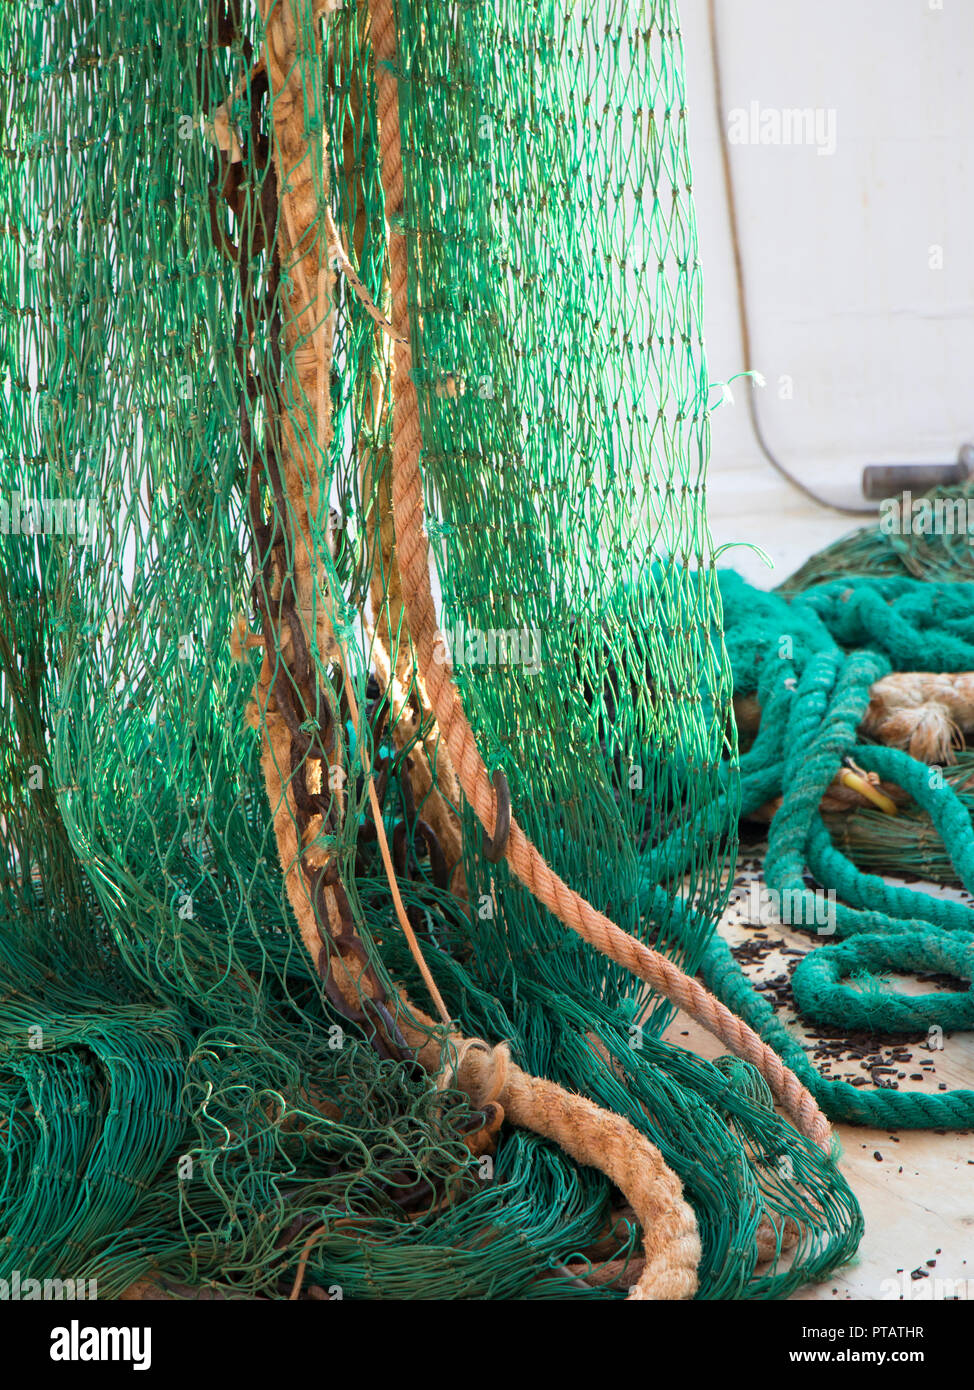 Pesca de arrastre net henging verde en un barco arrastrero Foto de stock